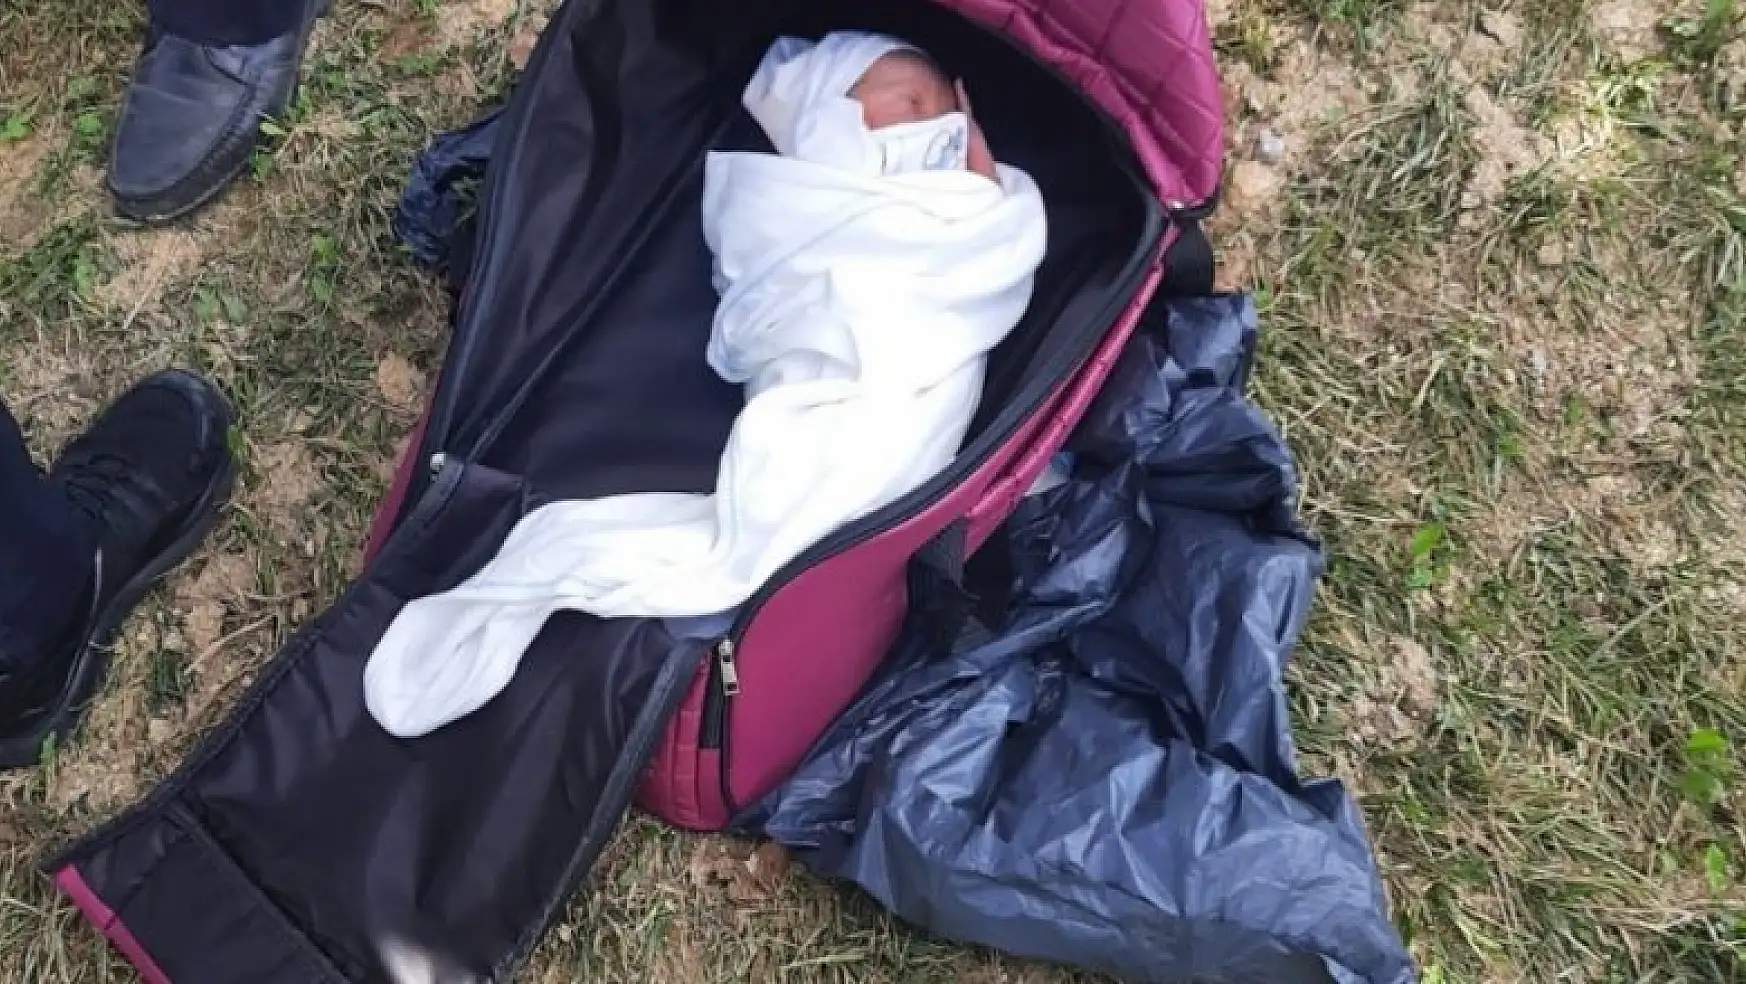 Arnavutköy'de bir parkta yeni doğmuş bebek bulundu